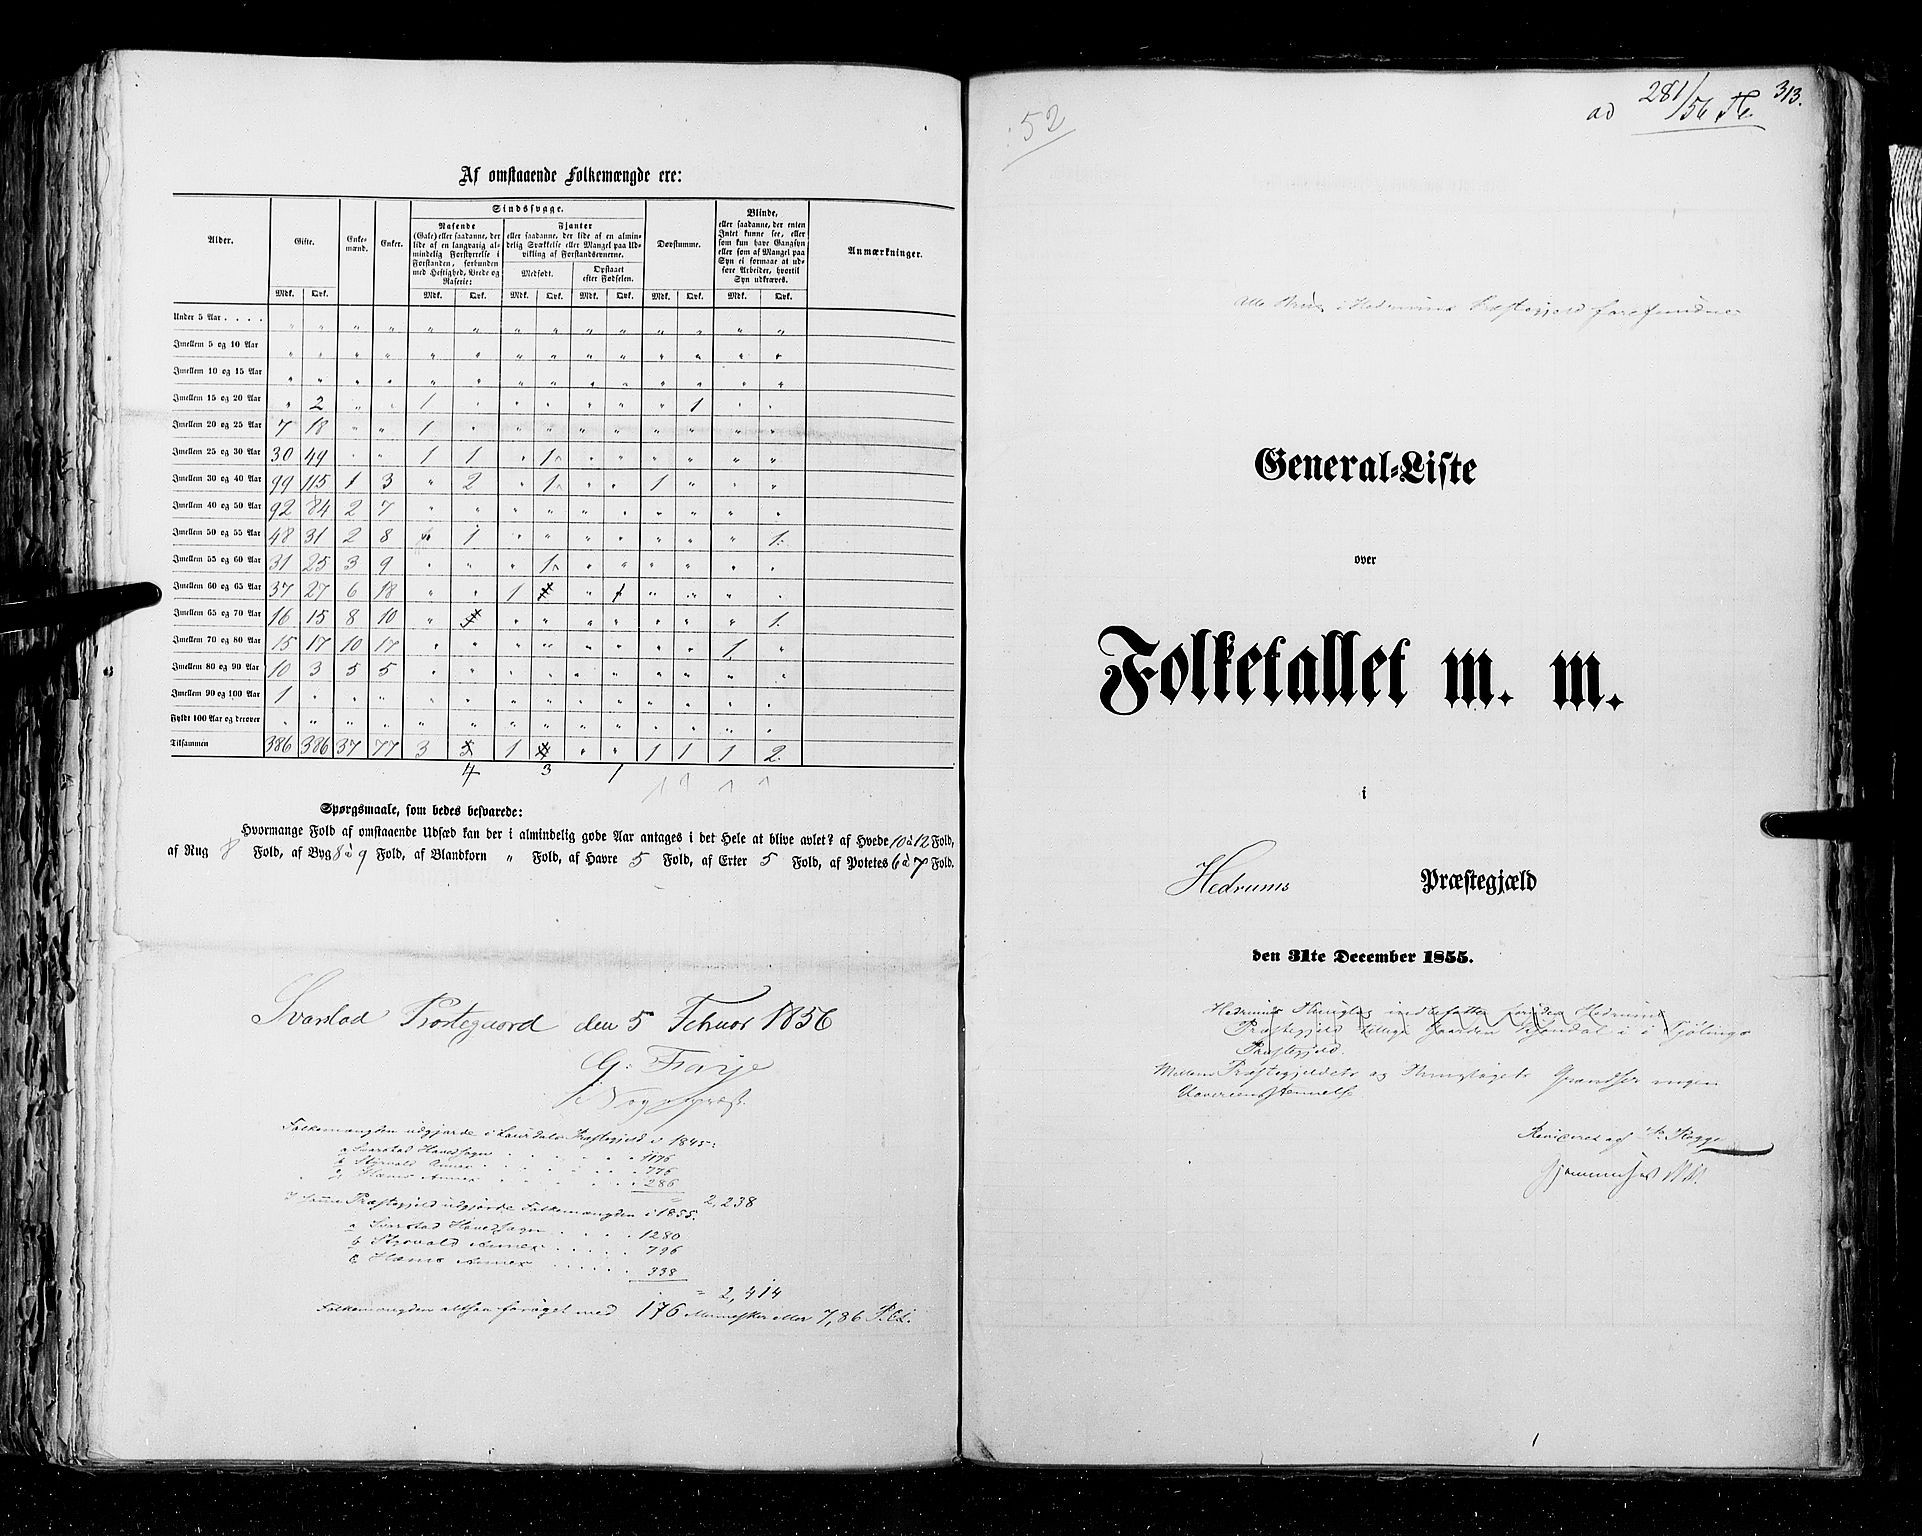 RA, Census 1855, vol. 2: Kristians amt, Buskerud amt og Jarlsberg og Larvik amt, 1855, p. 313